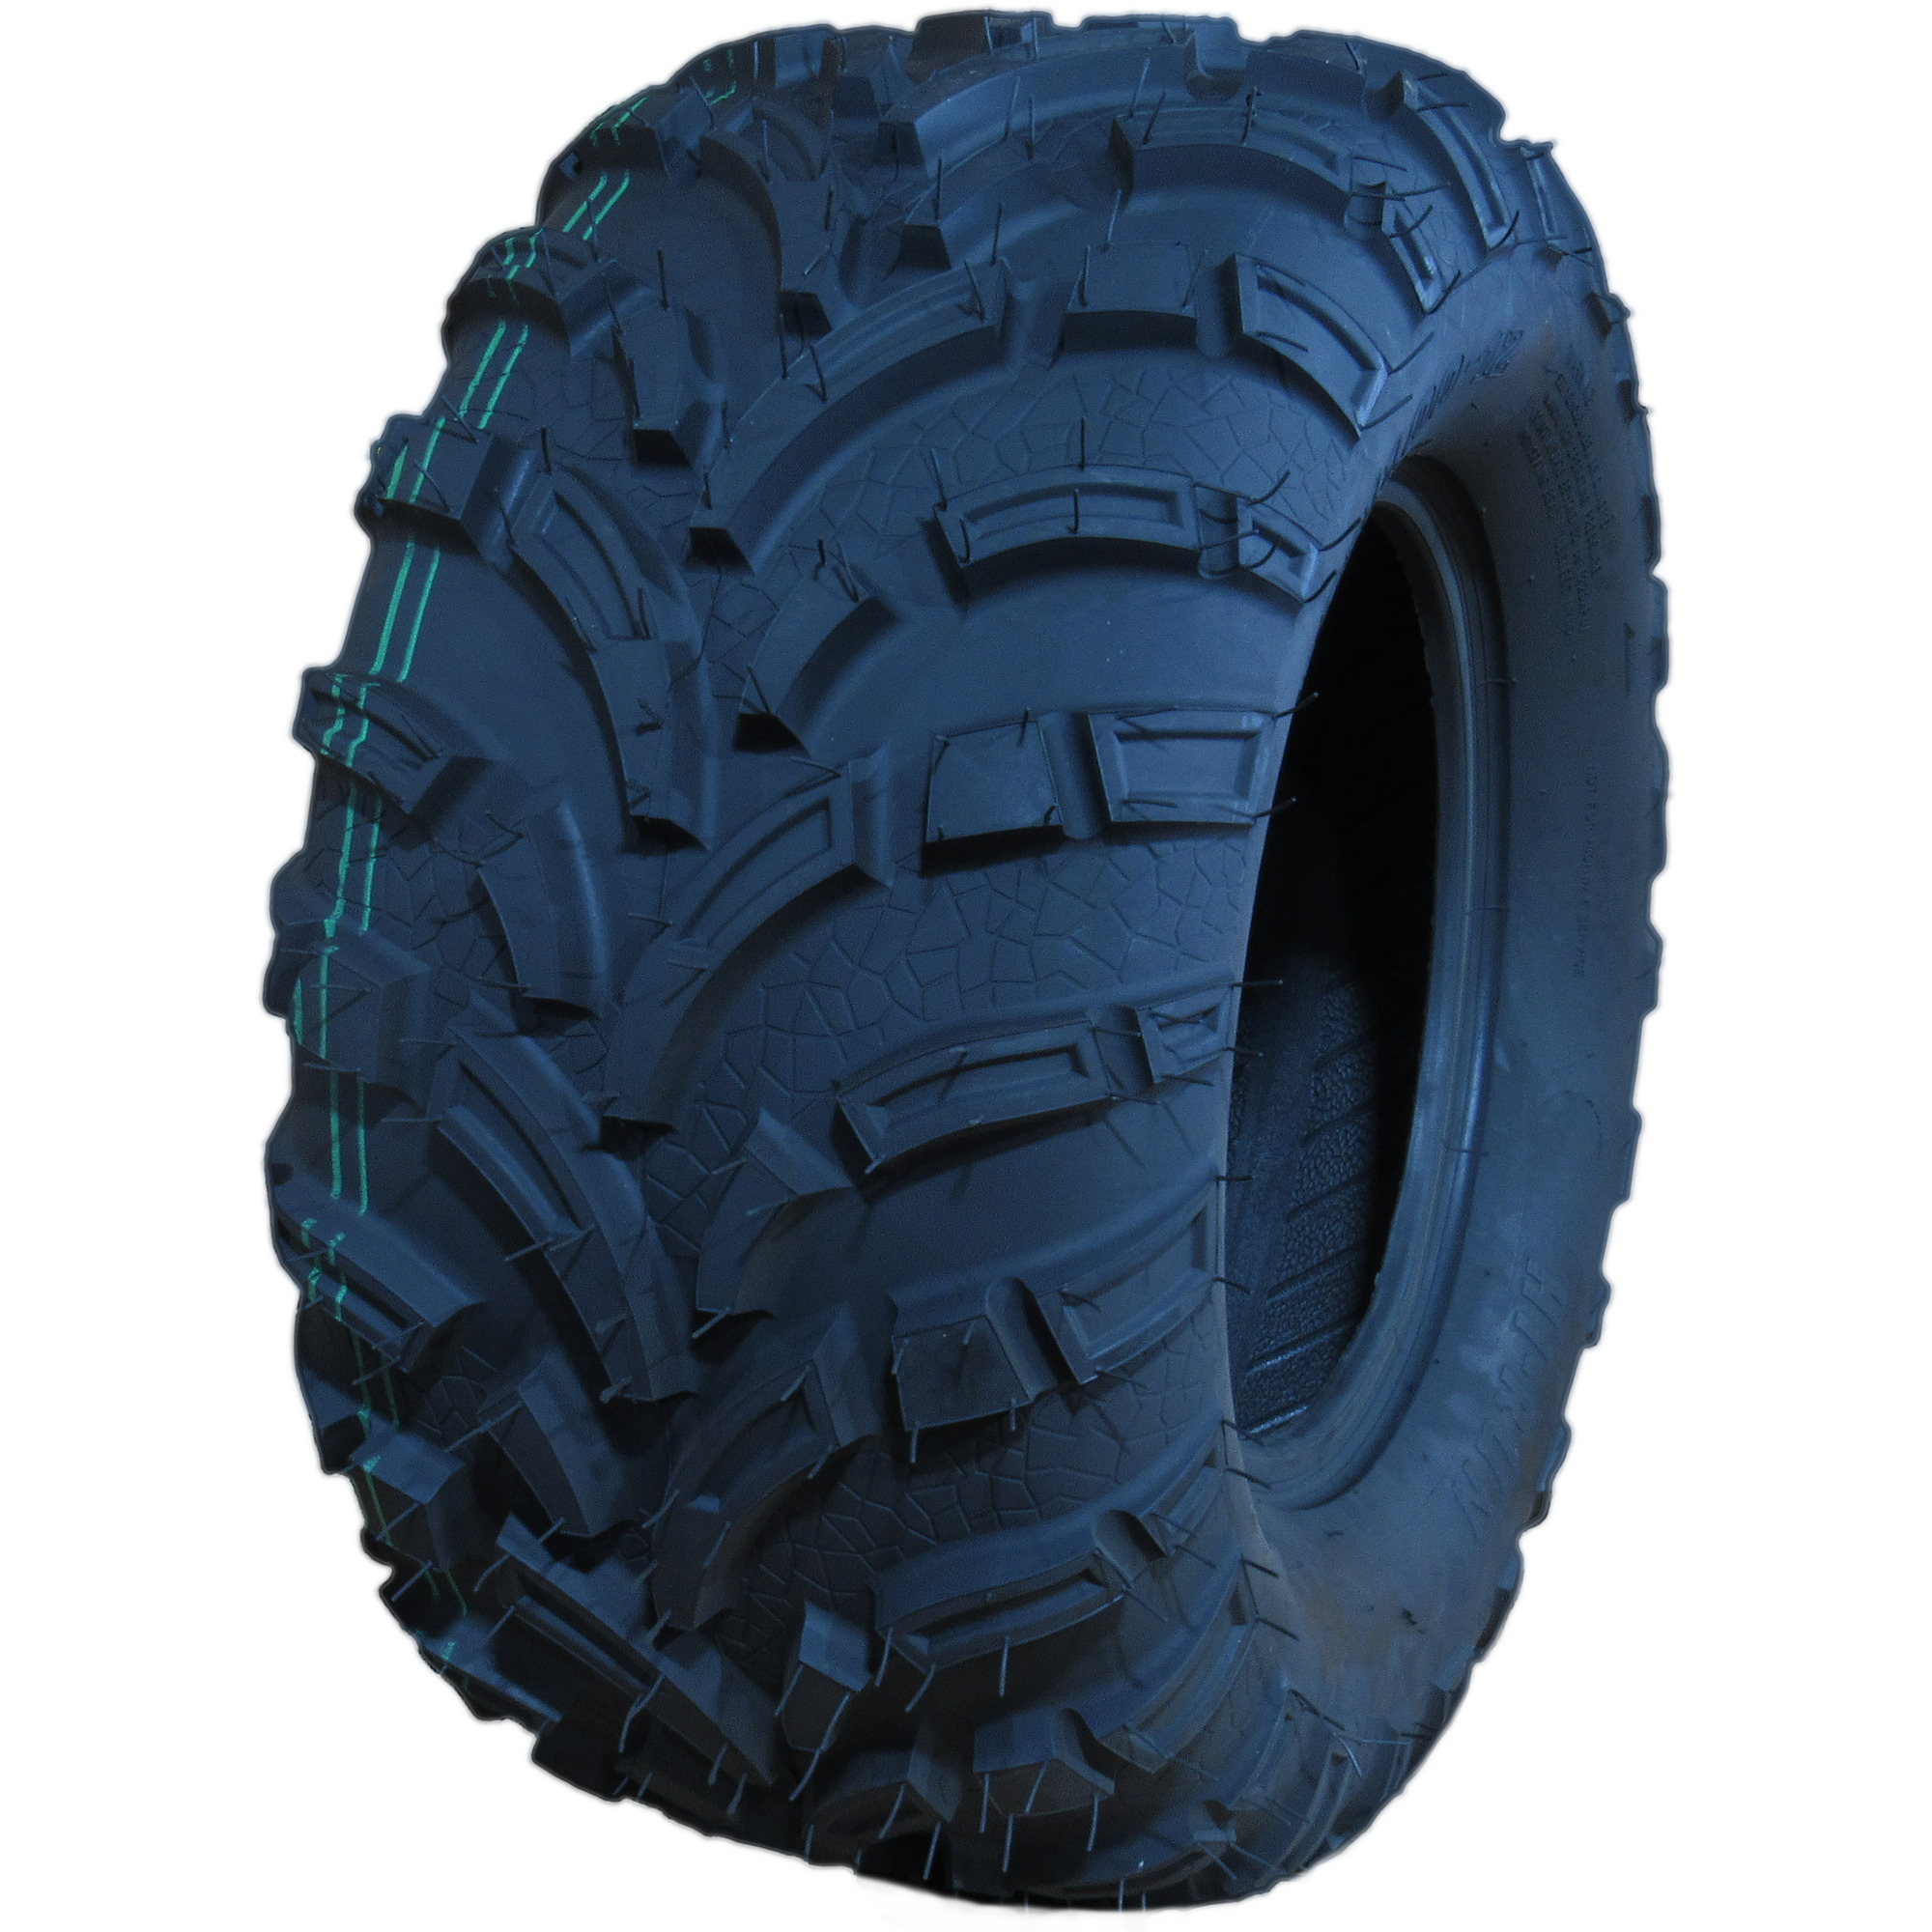 HI-RUN, ATV/UTV Tire, SU73 ATV, Tire Size 25X11-12 Load Range Rating C, Model WD1241